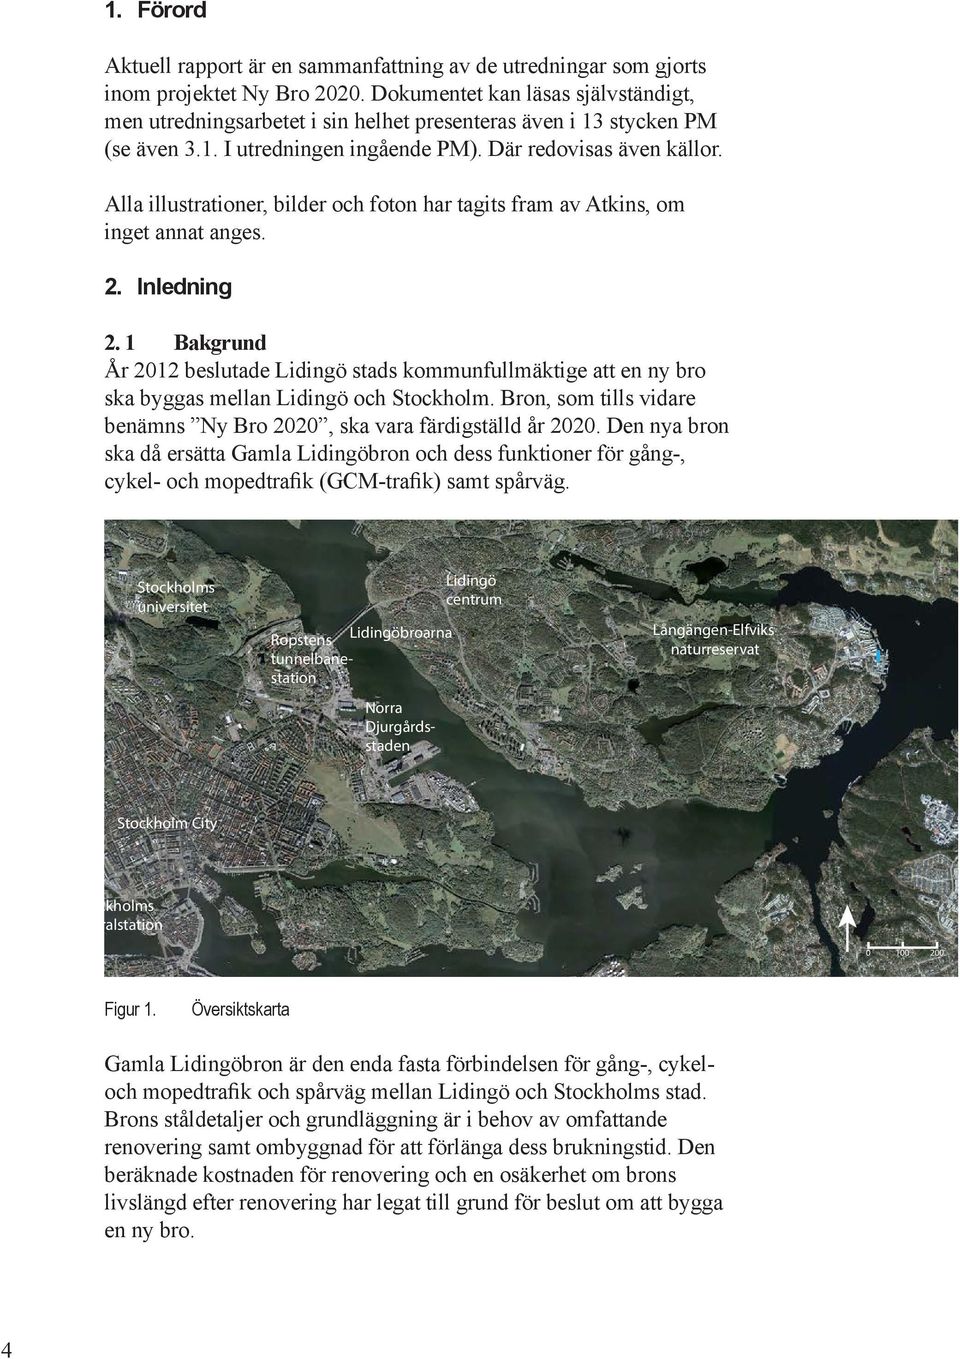 1 Bakg År 2012 beslutade gö stads kommufullmäkti att y bro ska byggas mella gö och Stockholm. Bro, som tills vidare bäms Ny Bro 2020, ska vara färdigställd år 2020.